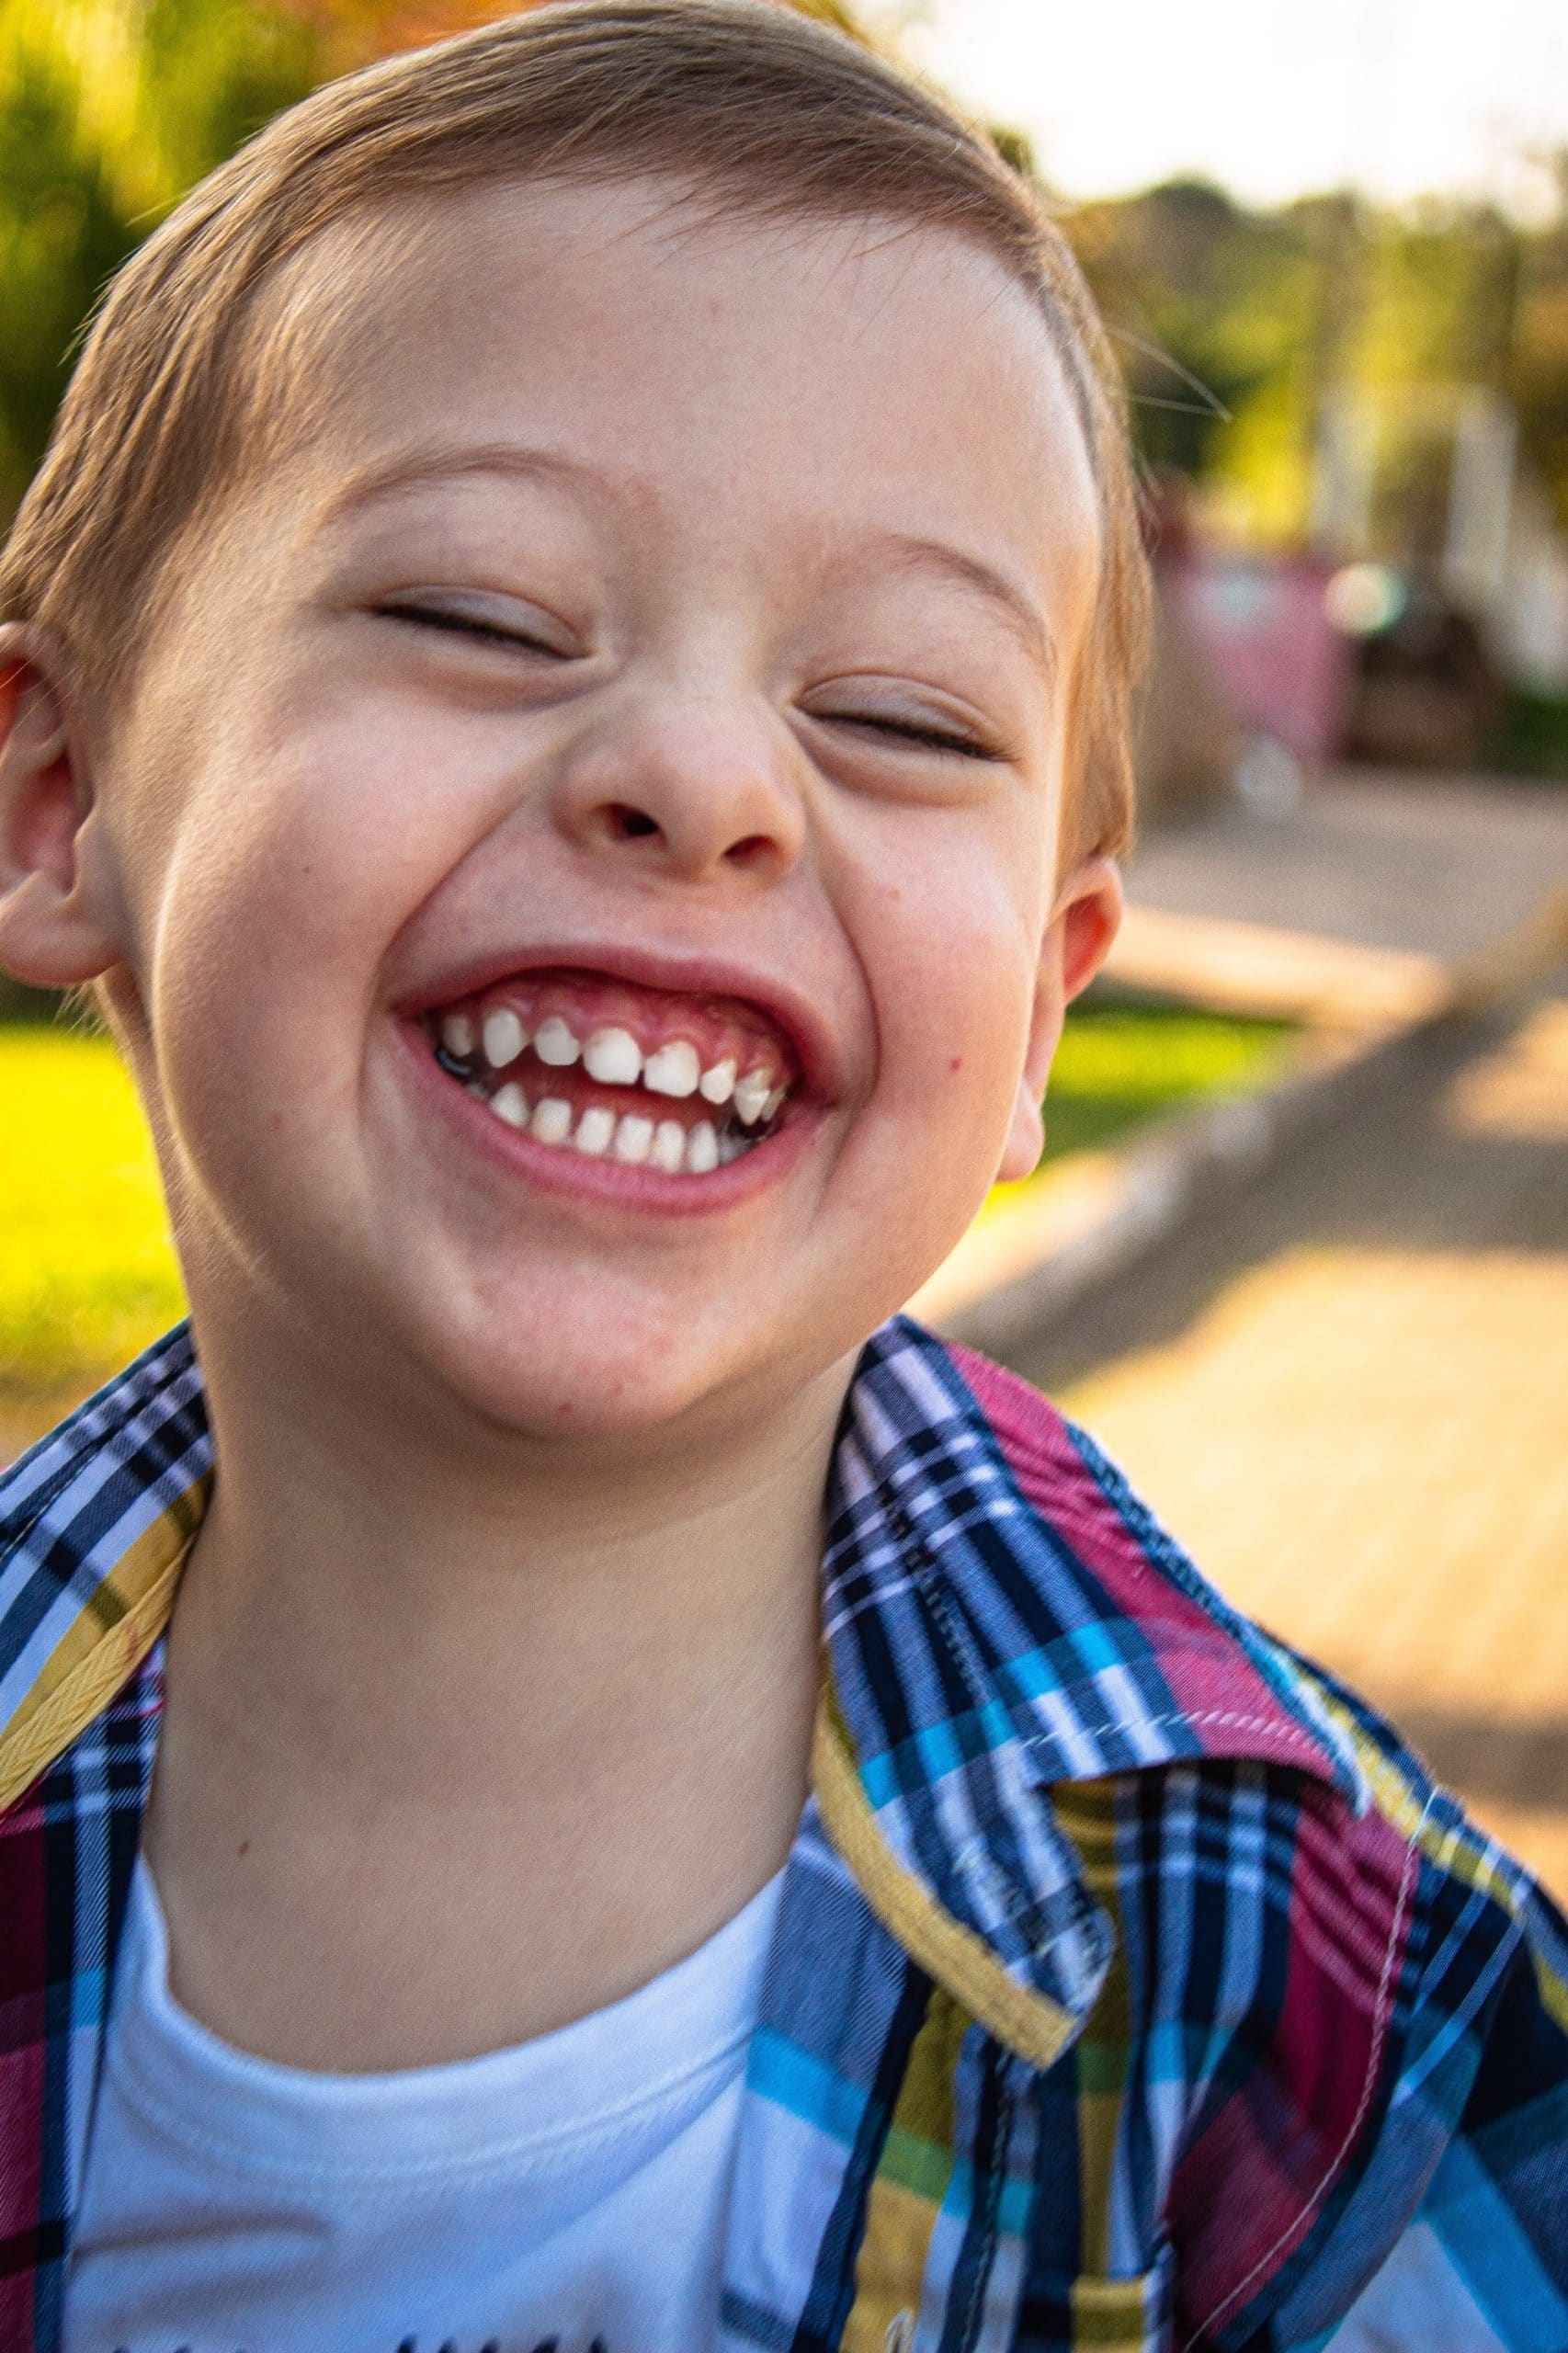 Child Smiling after dentist